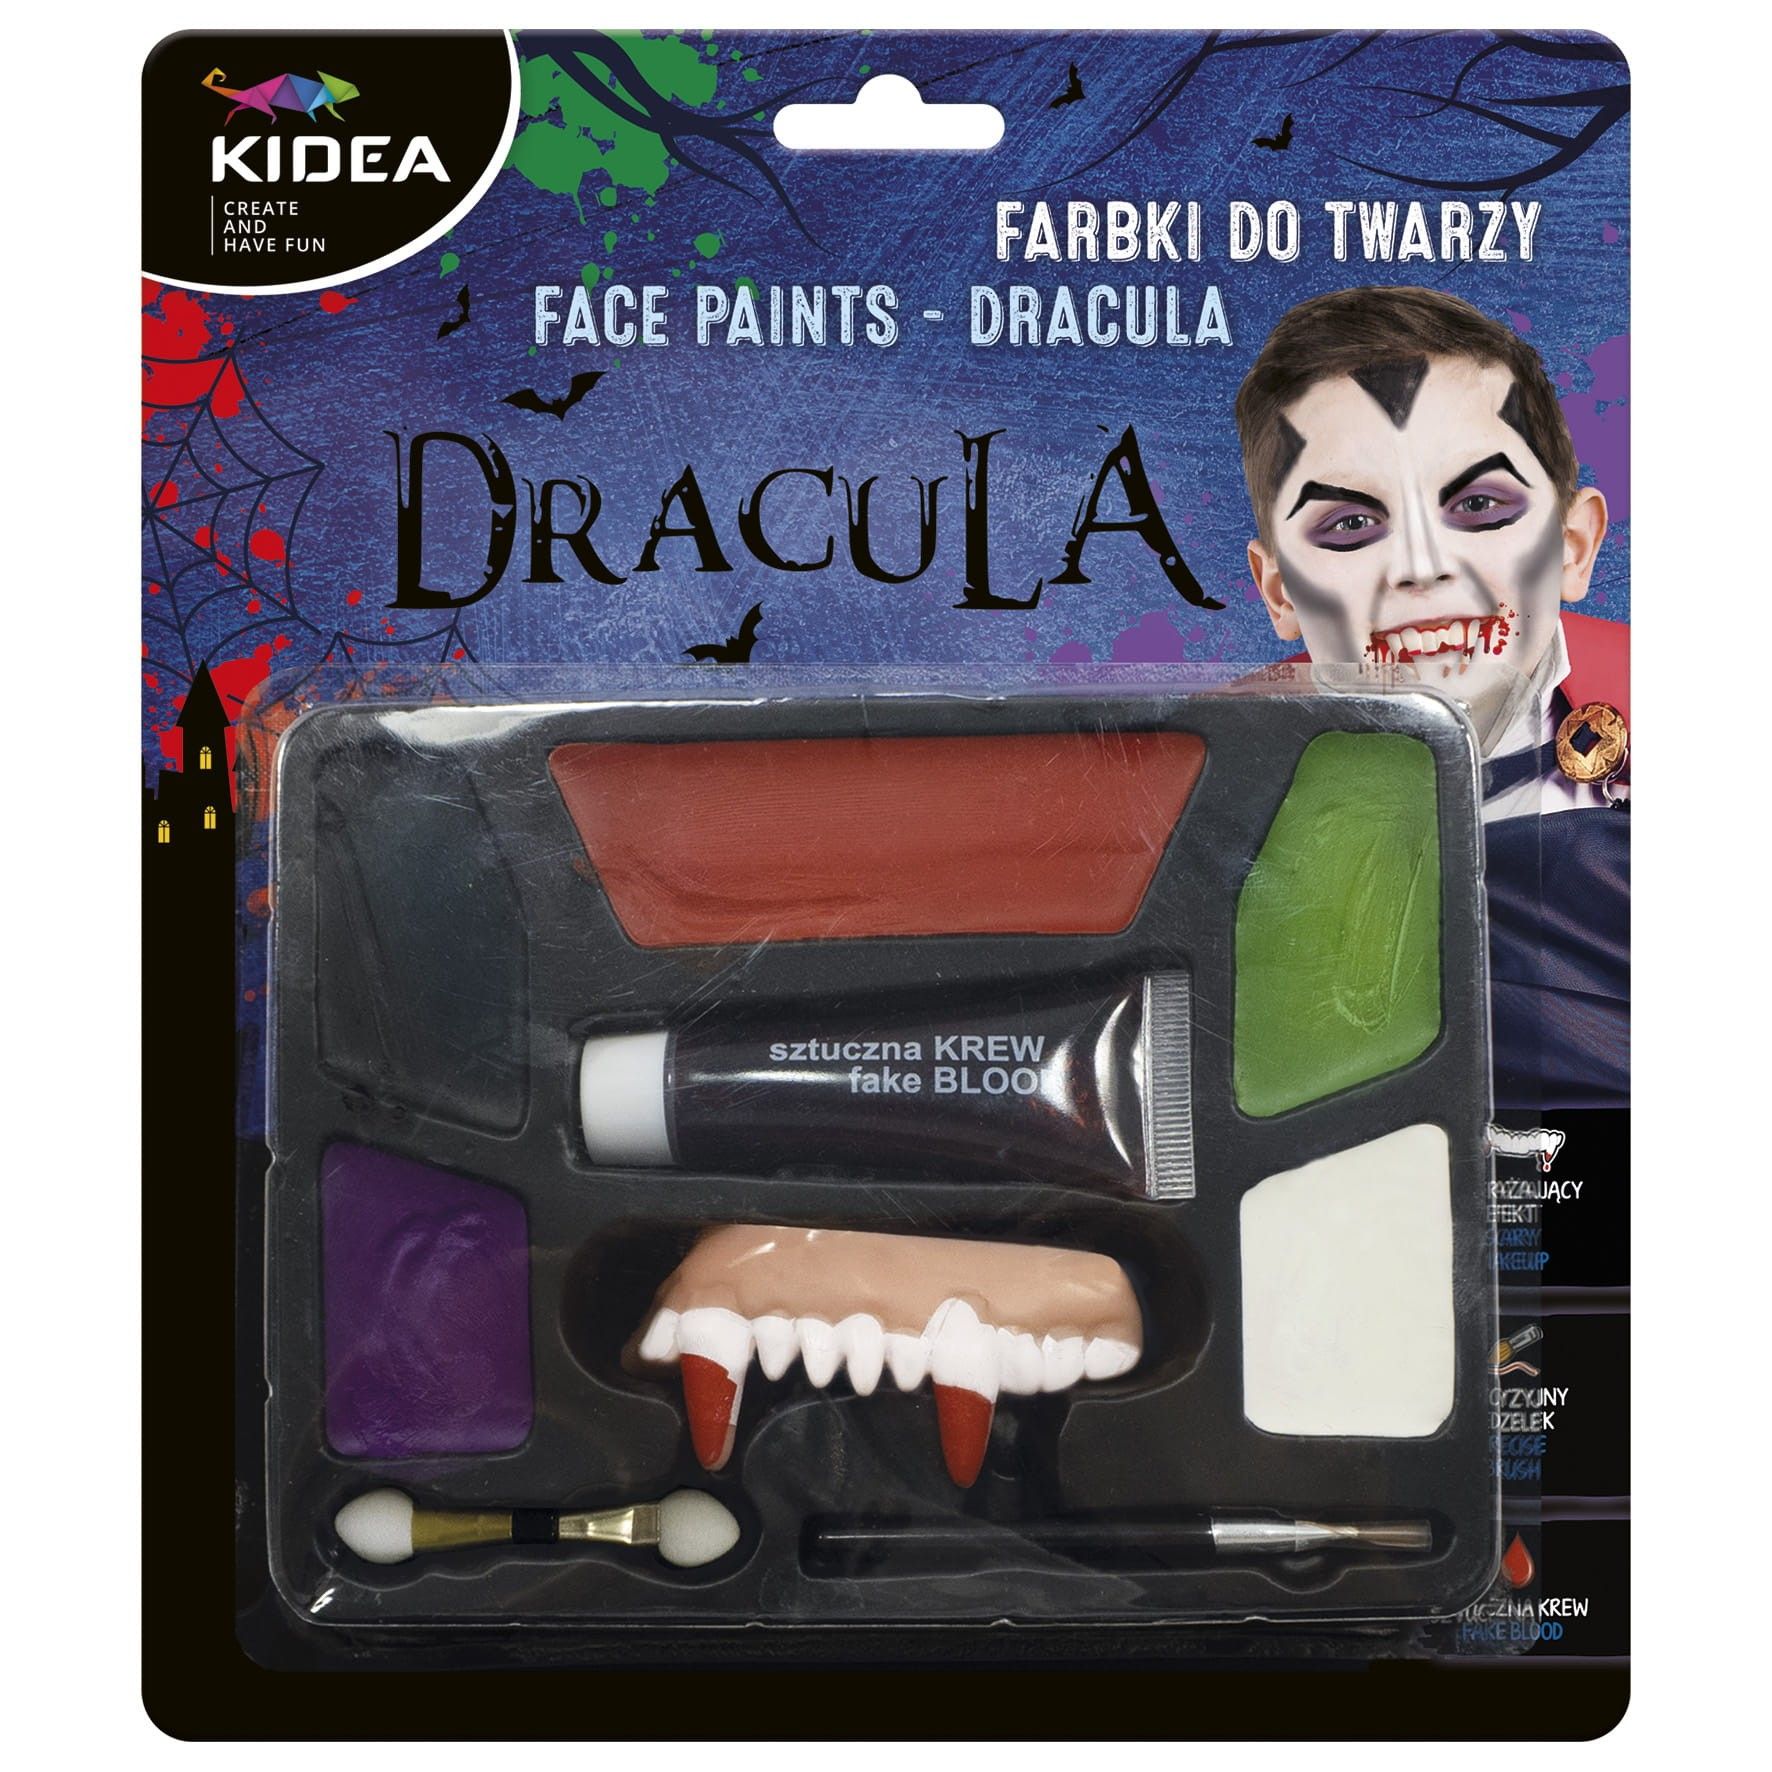 Set pictura de halloween pentru fata copiilor, Kidea, multicolore, Dracula cu dinti